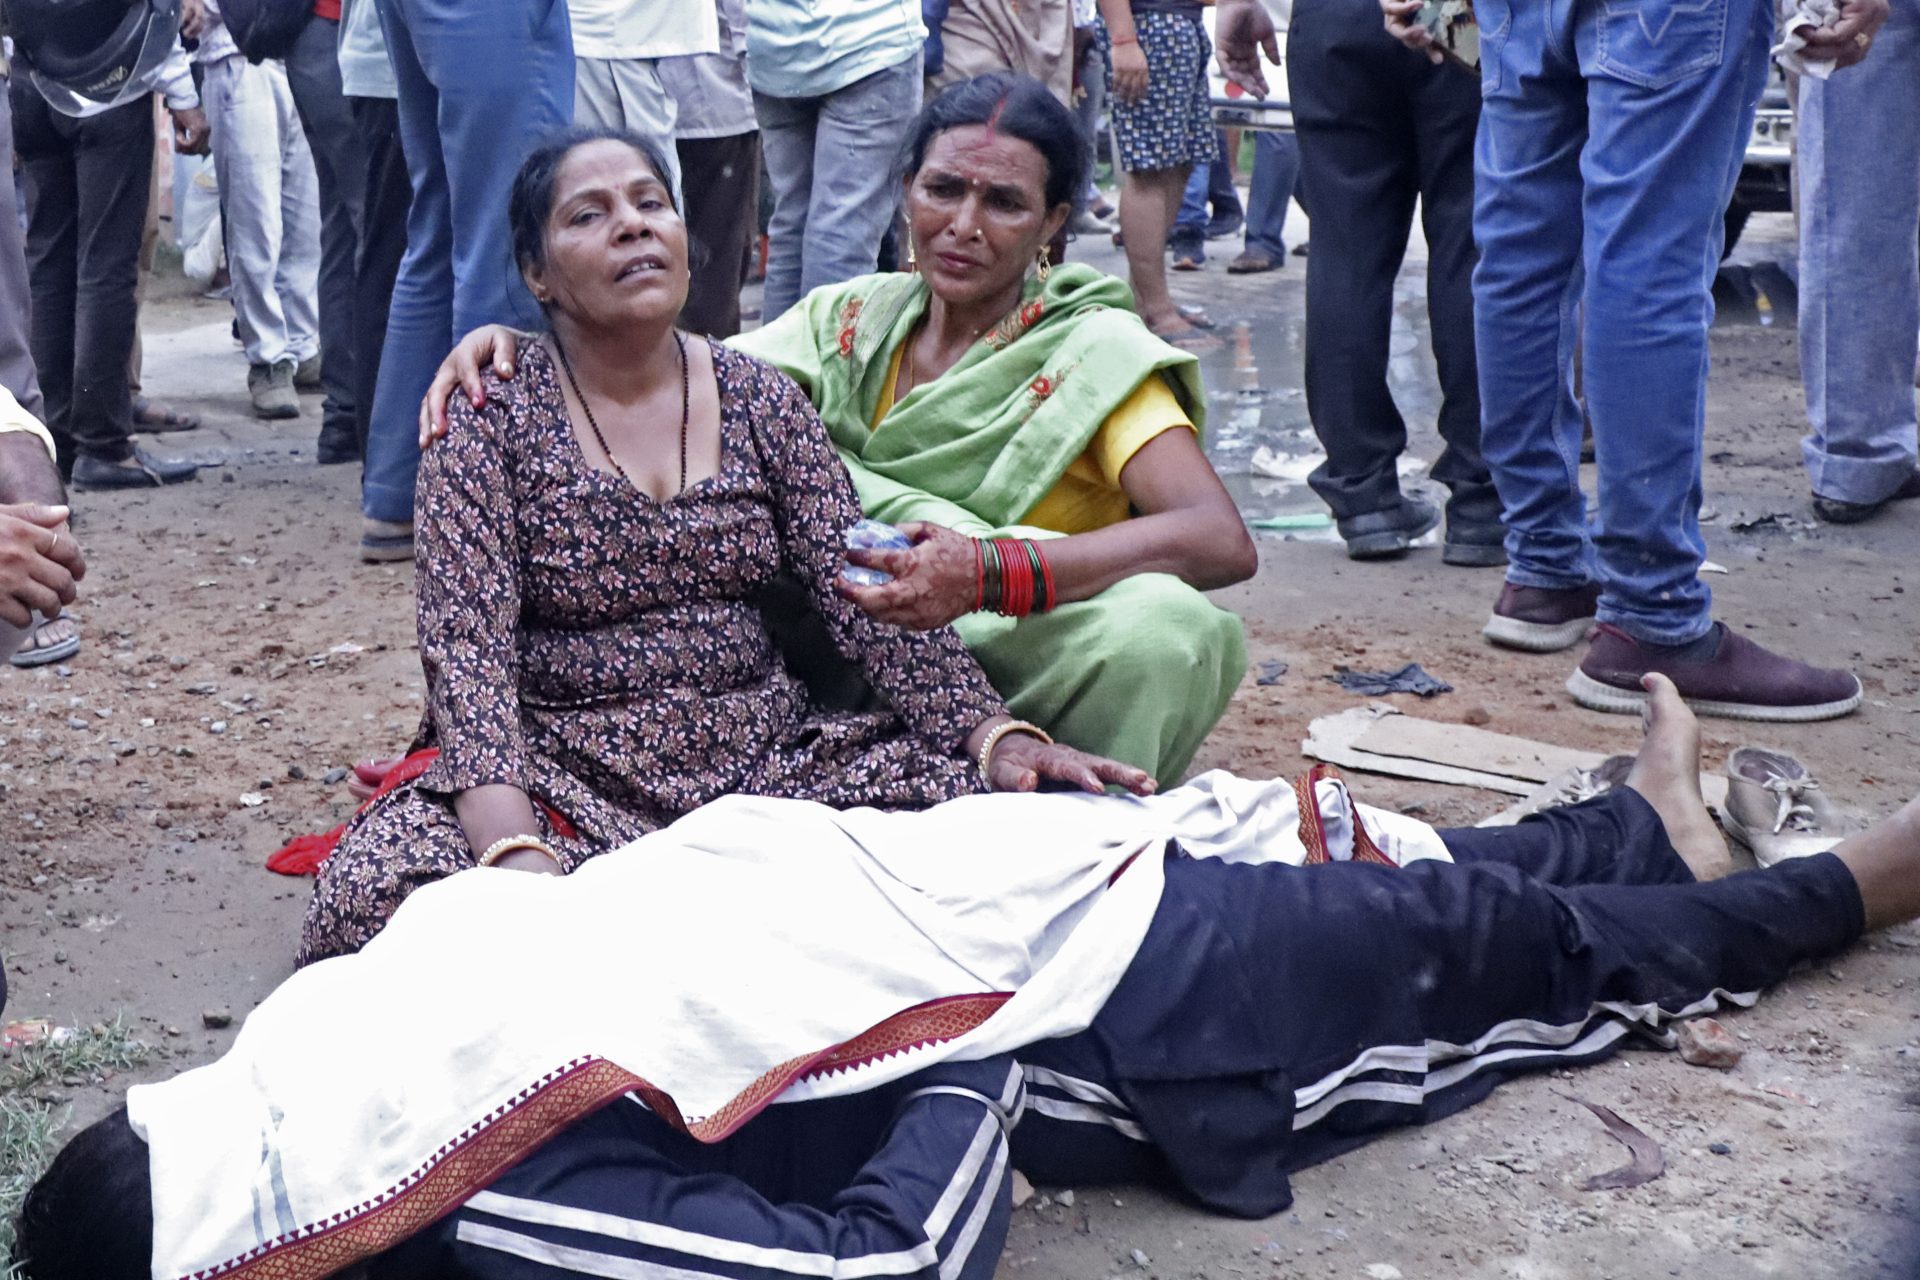 Bousculade en Inde le bilan s'alourdit avec 116 morts